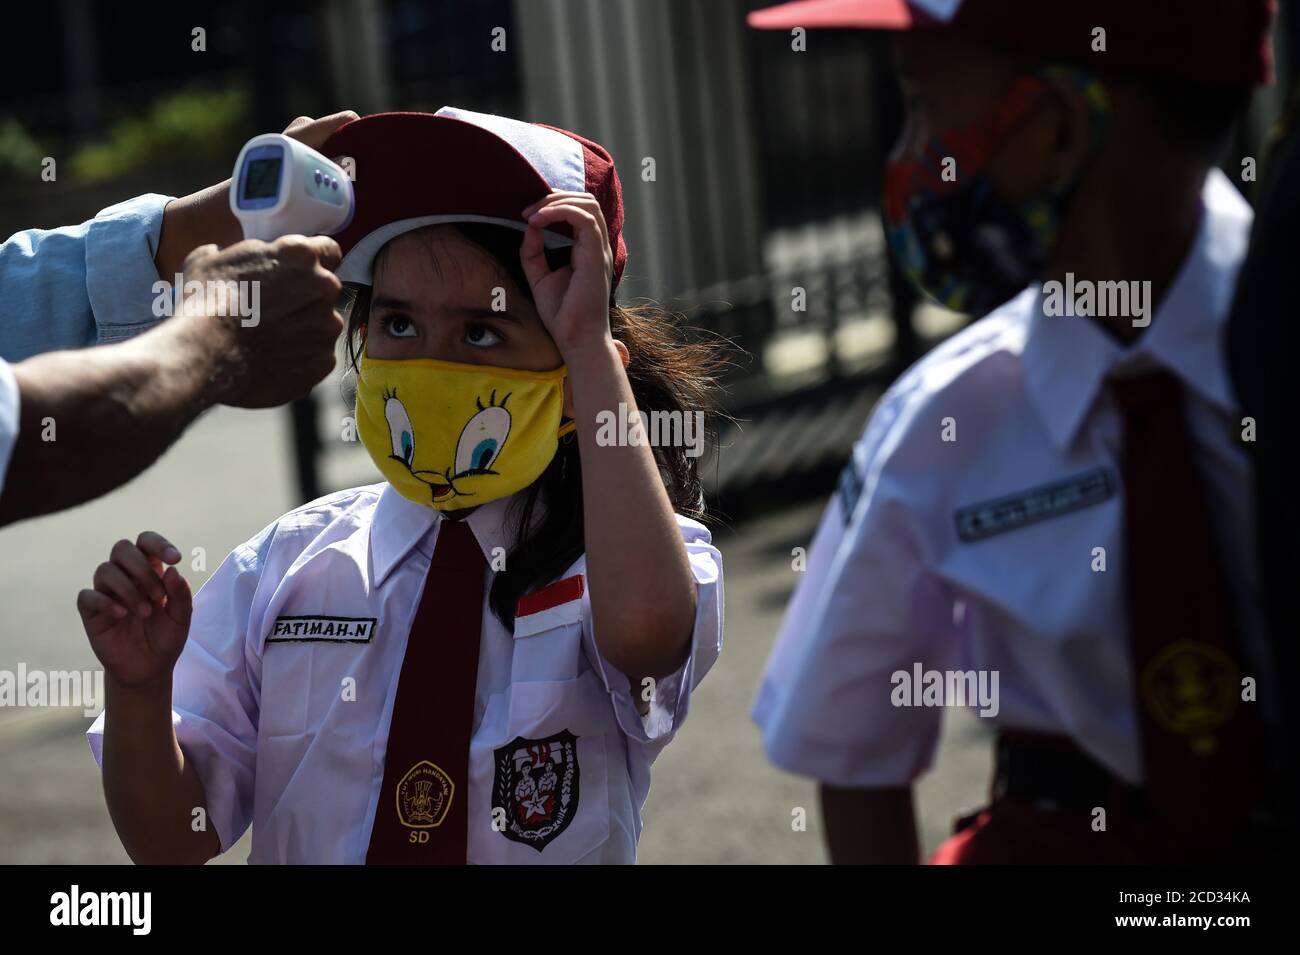 (200826) -- JAKARTA, 26 agosto 2020 (Xinhua) -- una studentessa elementare che indossa una maschera facciale ha la sua temperatura controllata prima di ricevere un vaccino morbillo-rosolia (MR) in mezzo all'epidemia di COVID-19 a Giacarta, Indonesia, 26 agosto 2020. I vaccini contro il morbillo-rosolia (MR) vengono somministrati ai giovani come parte del programma del governo indonesiano per offrire un'adeguata immunizzazione dei bambini scolastici. (Xinhua/Agung Kuncahya B.) Foto Stock